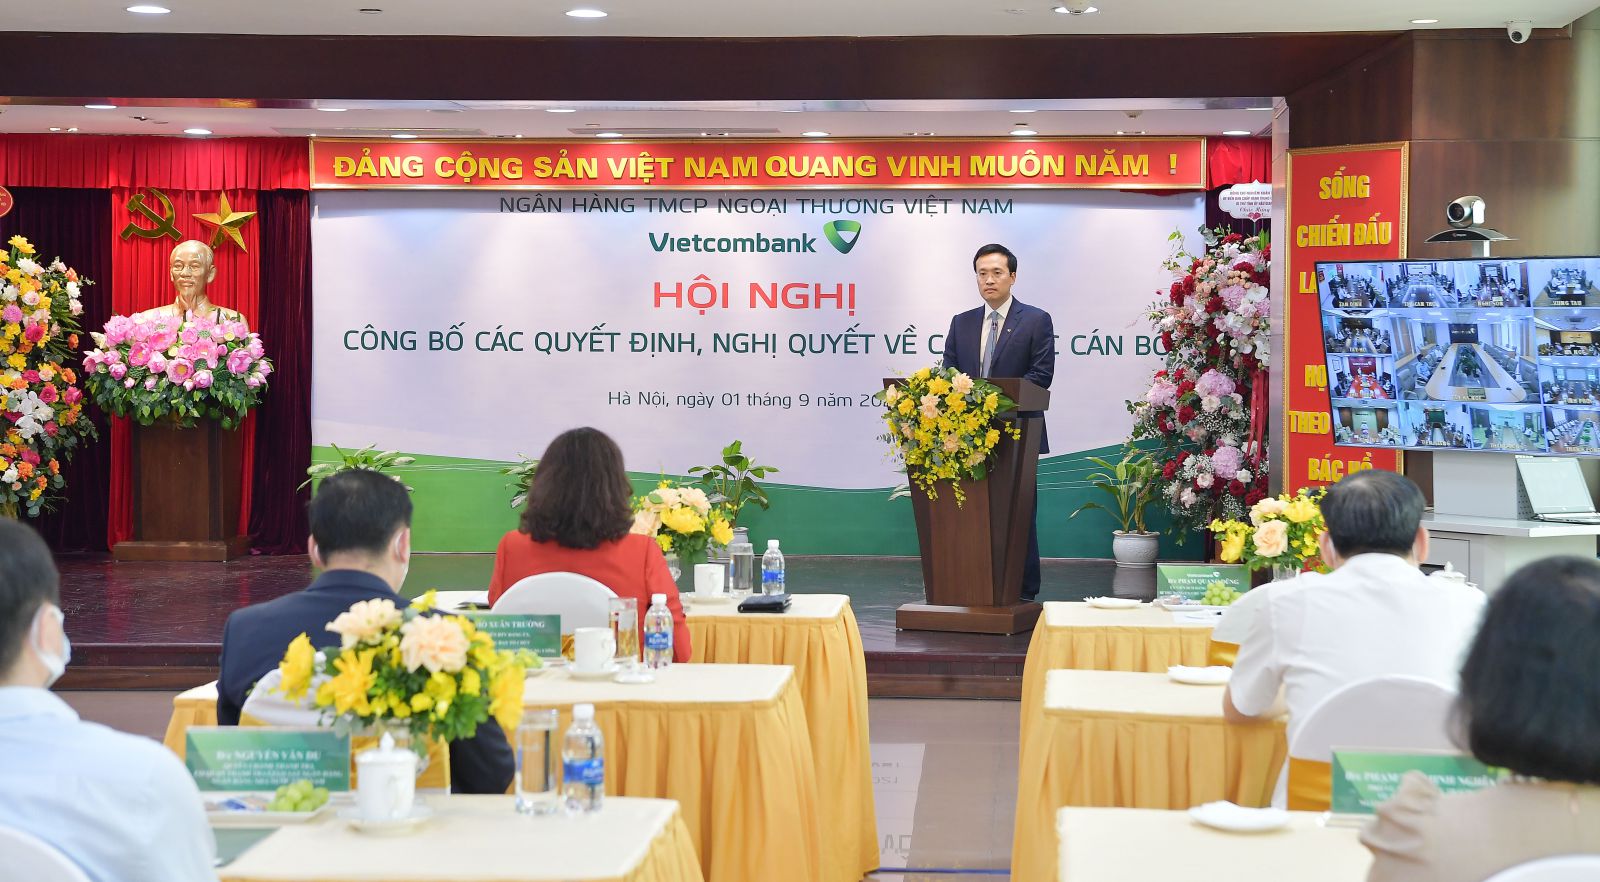 Ôngp/Phạm Quang Dũng - Tân Chủ tịch HĐQT Vietcombank phát biểu tại buổi lễ